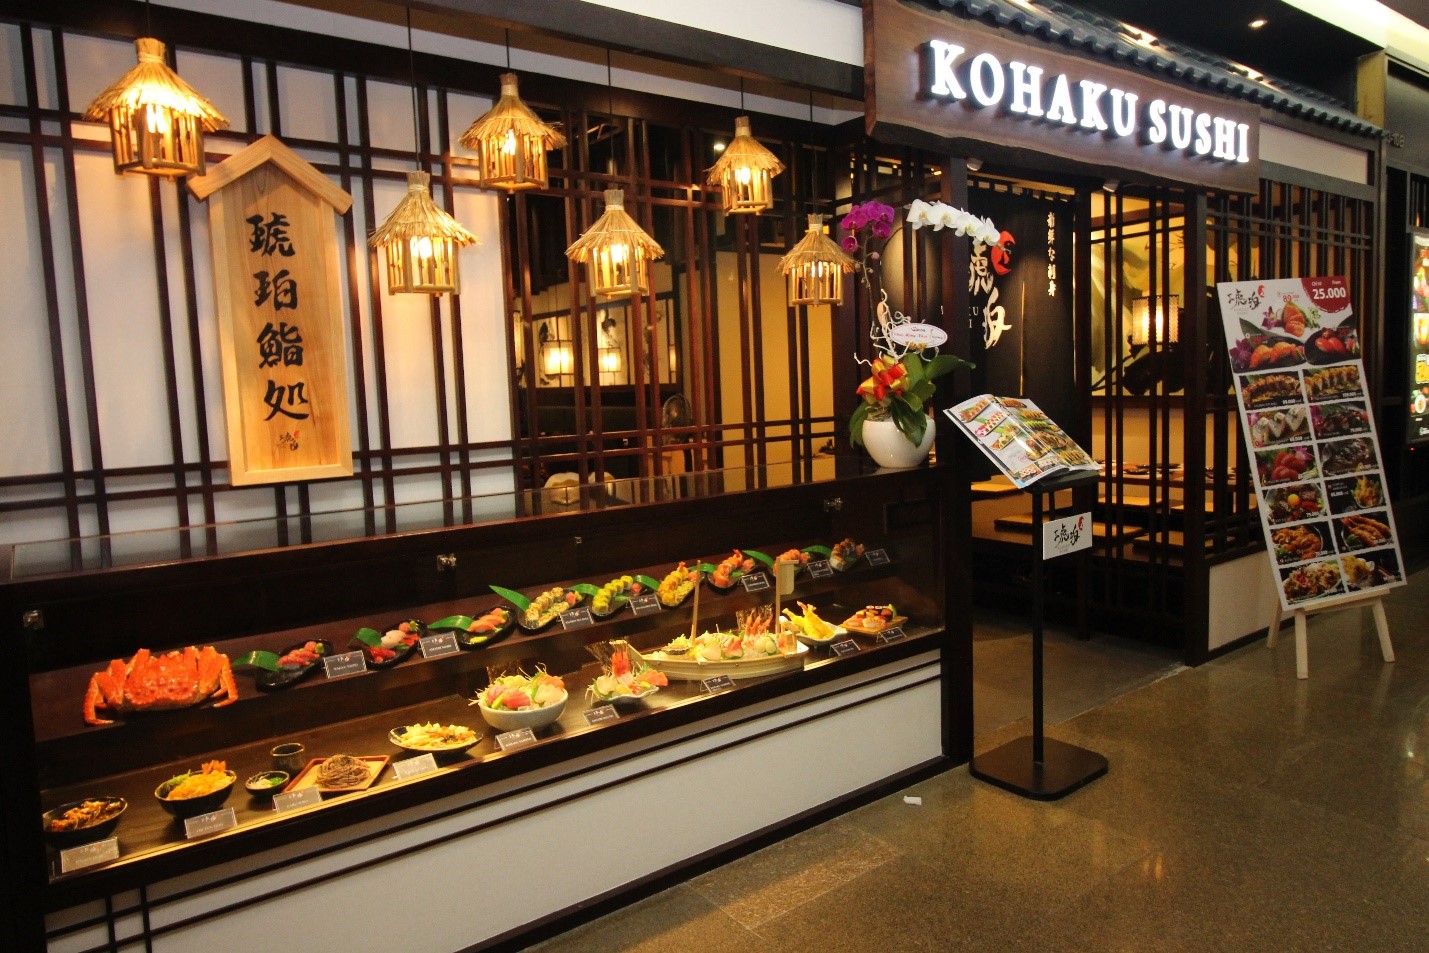 Kohakushi - Nhà hàng Sushi